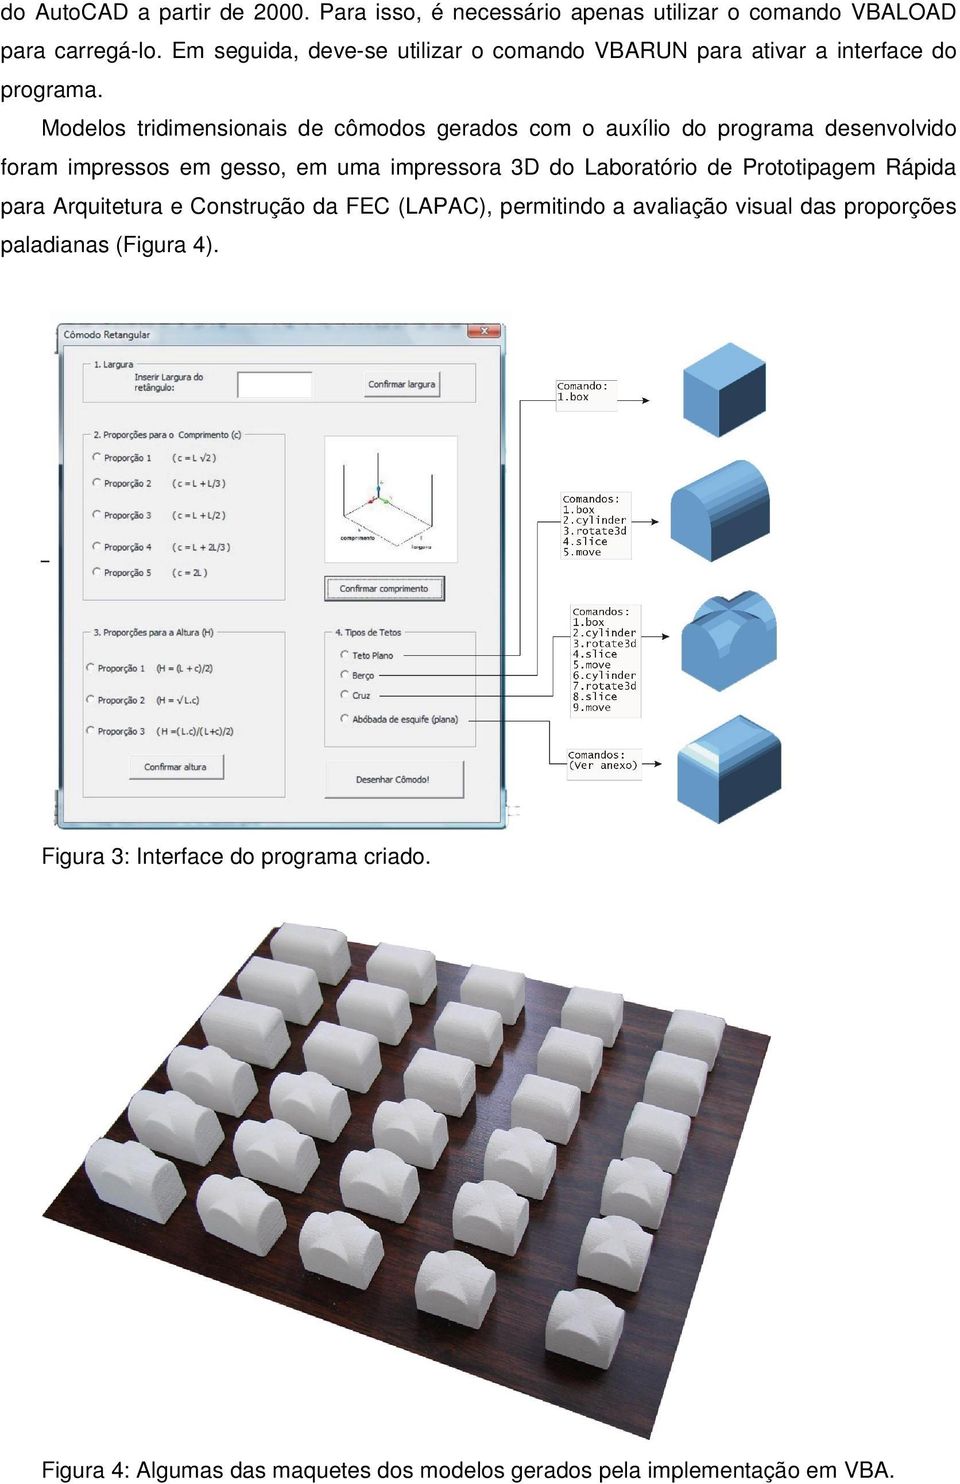 Modelos tridimensionais de cômodos gerados com o auxílio do programa desenvolvido foram impressos em gesso, em uma impressora 3D do Laboratório de